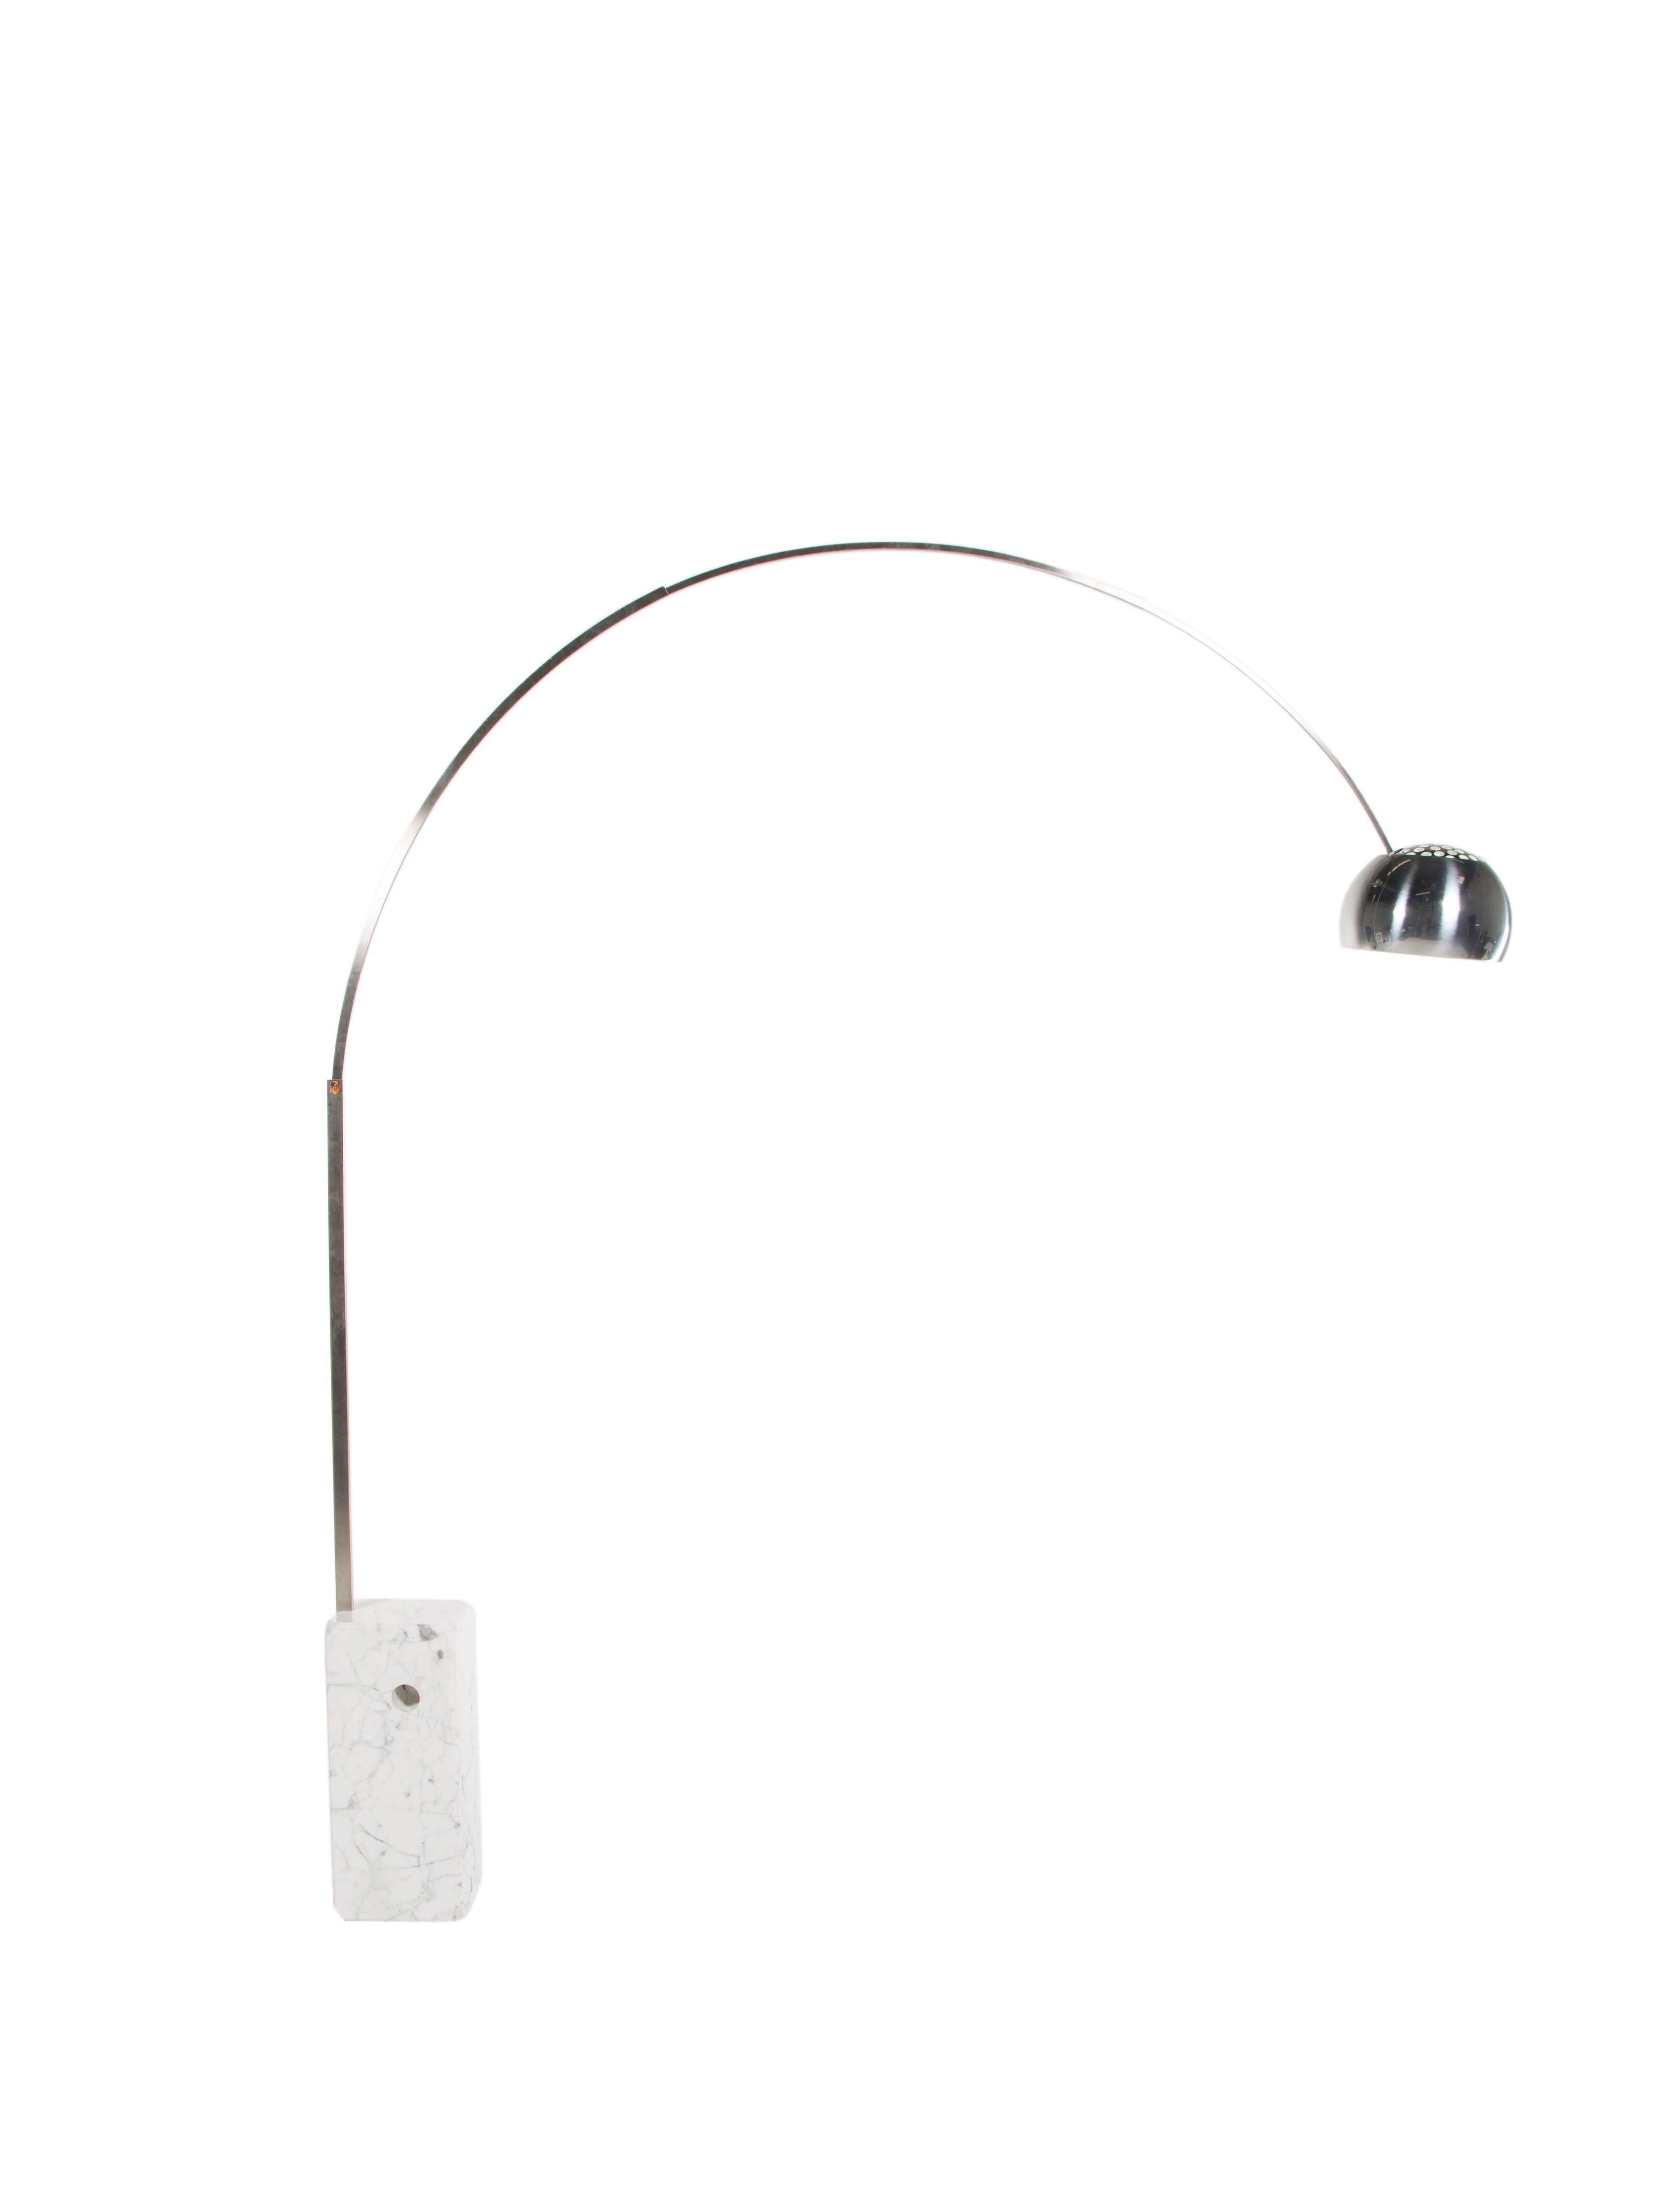 Arco Floor Lamp Replica Uk Simplescribbleco regarding sizing 3648 X 4814